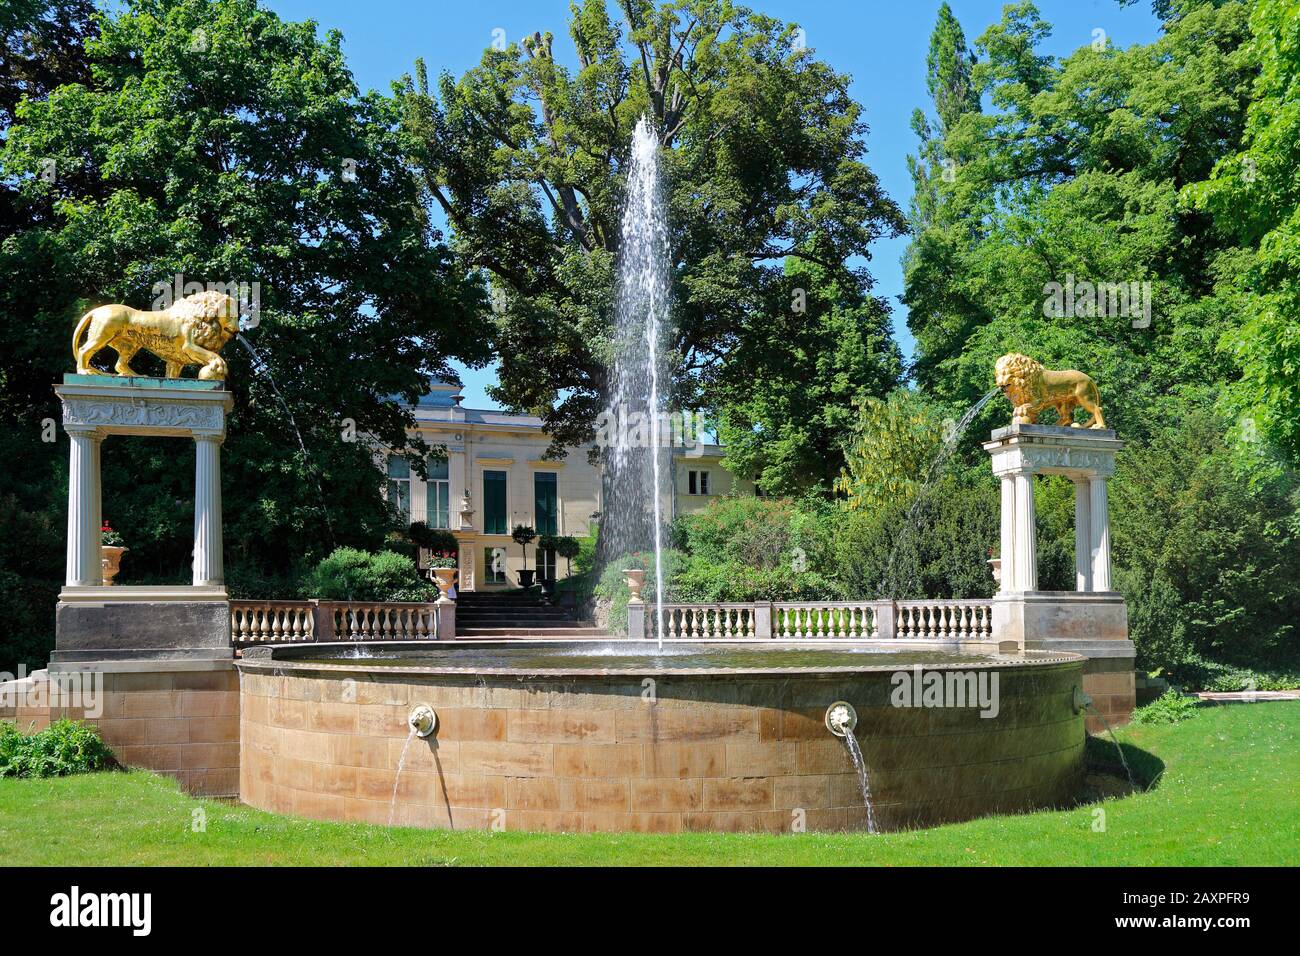 Berlin, Glienicke Castle, fountain Stock Photo